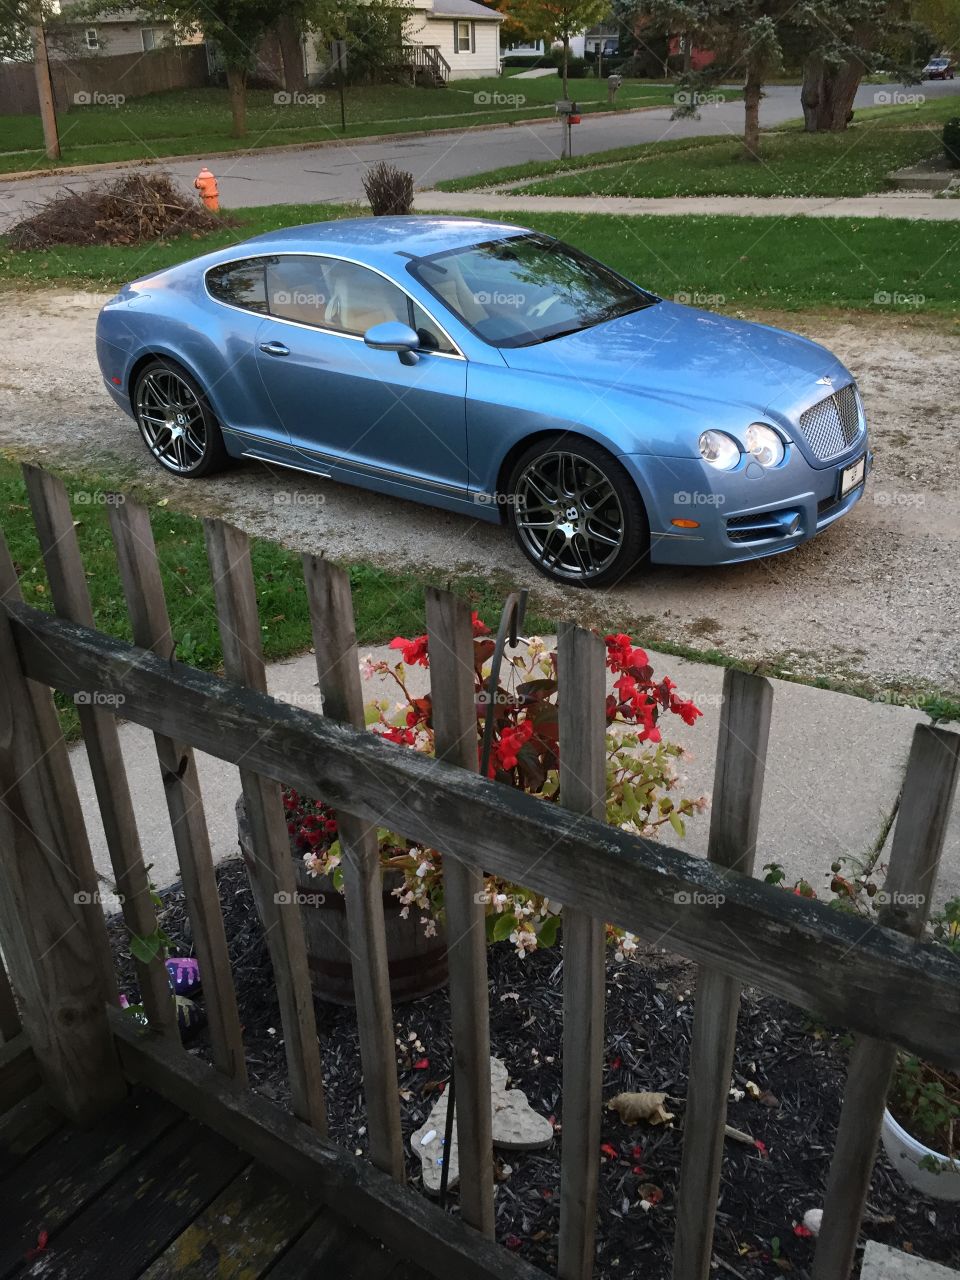 Bentley in driveway. Bentley in driveway